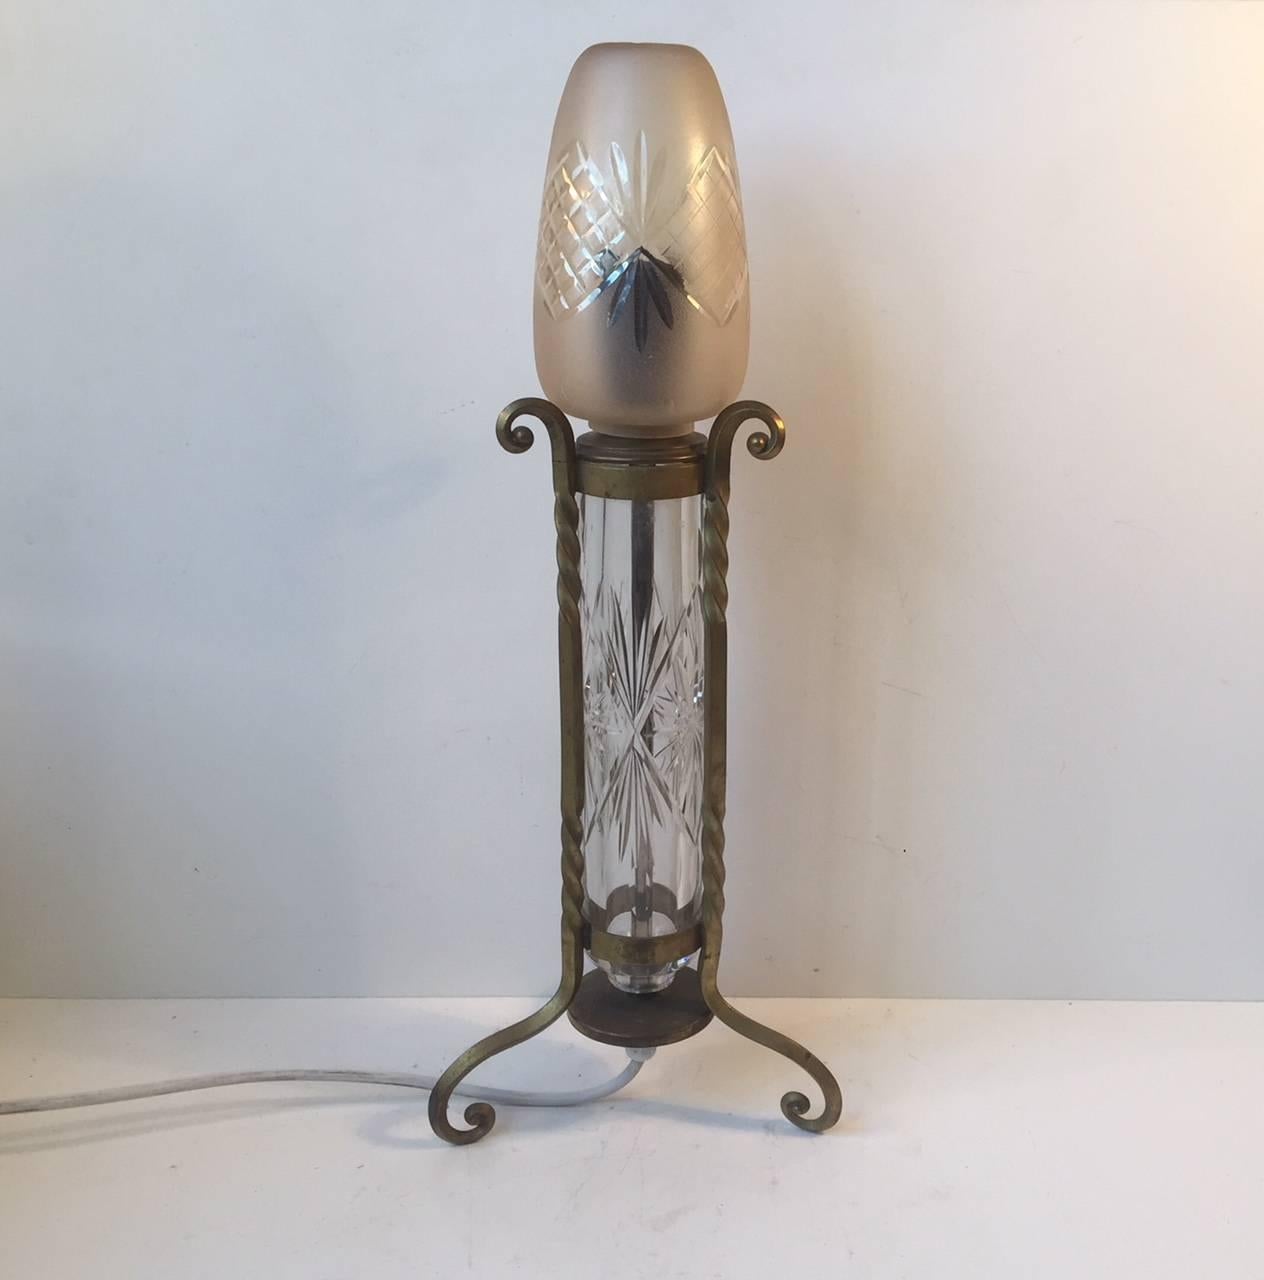 Eine handgefertigte französische Tischleuchte aus gedrehtem/gewirbeltem Messing, einem geätzten röhrenförmigen Kristallkern und einem farbigen, matten und teilweise geätzten Schirm. Diese Lampe wurde in Frankreich in den 1940er oder 1950er Jahren